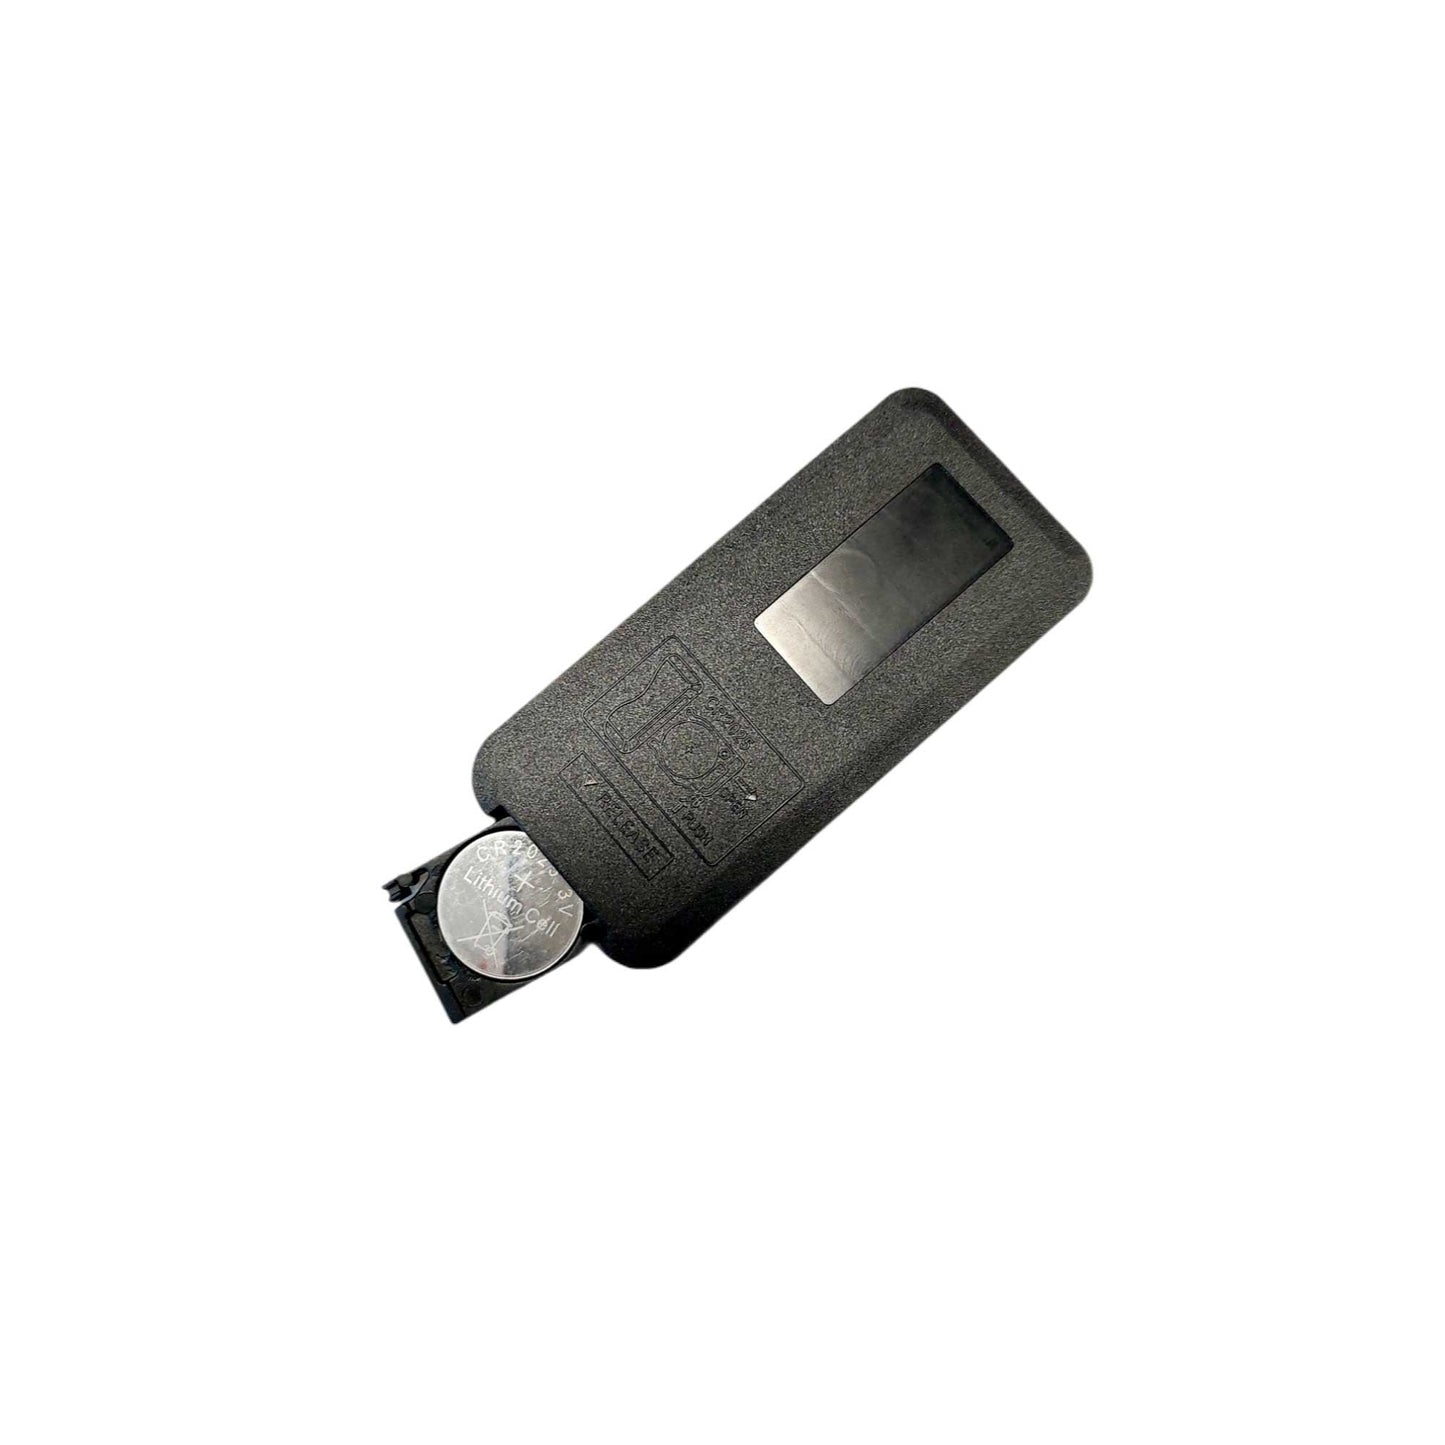 Essential Oil Aroma Diffuser Remote 400ml Tulip Dark Wood Ultrasonic Humidifier